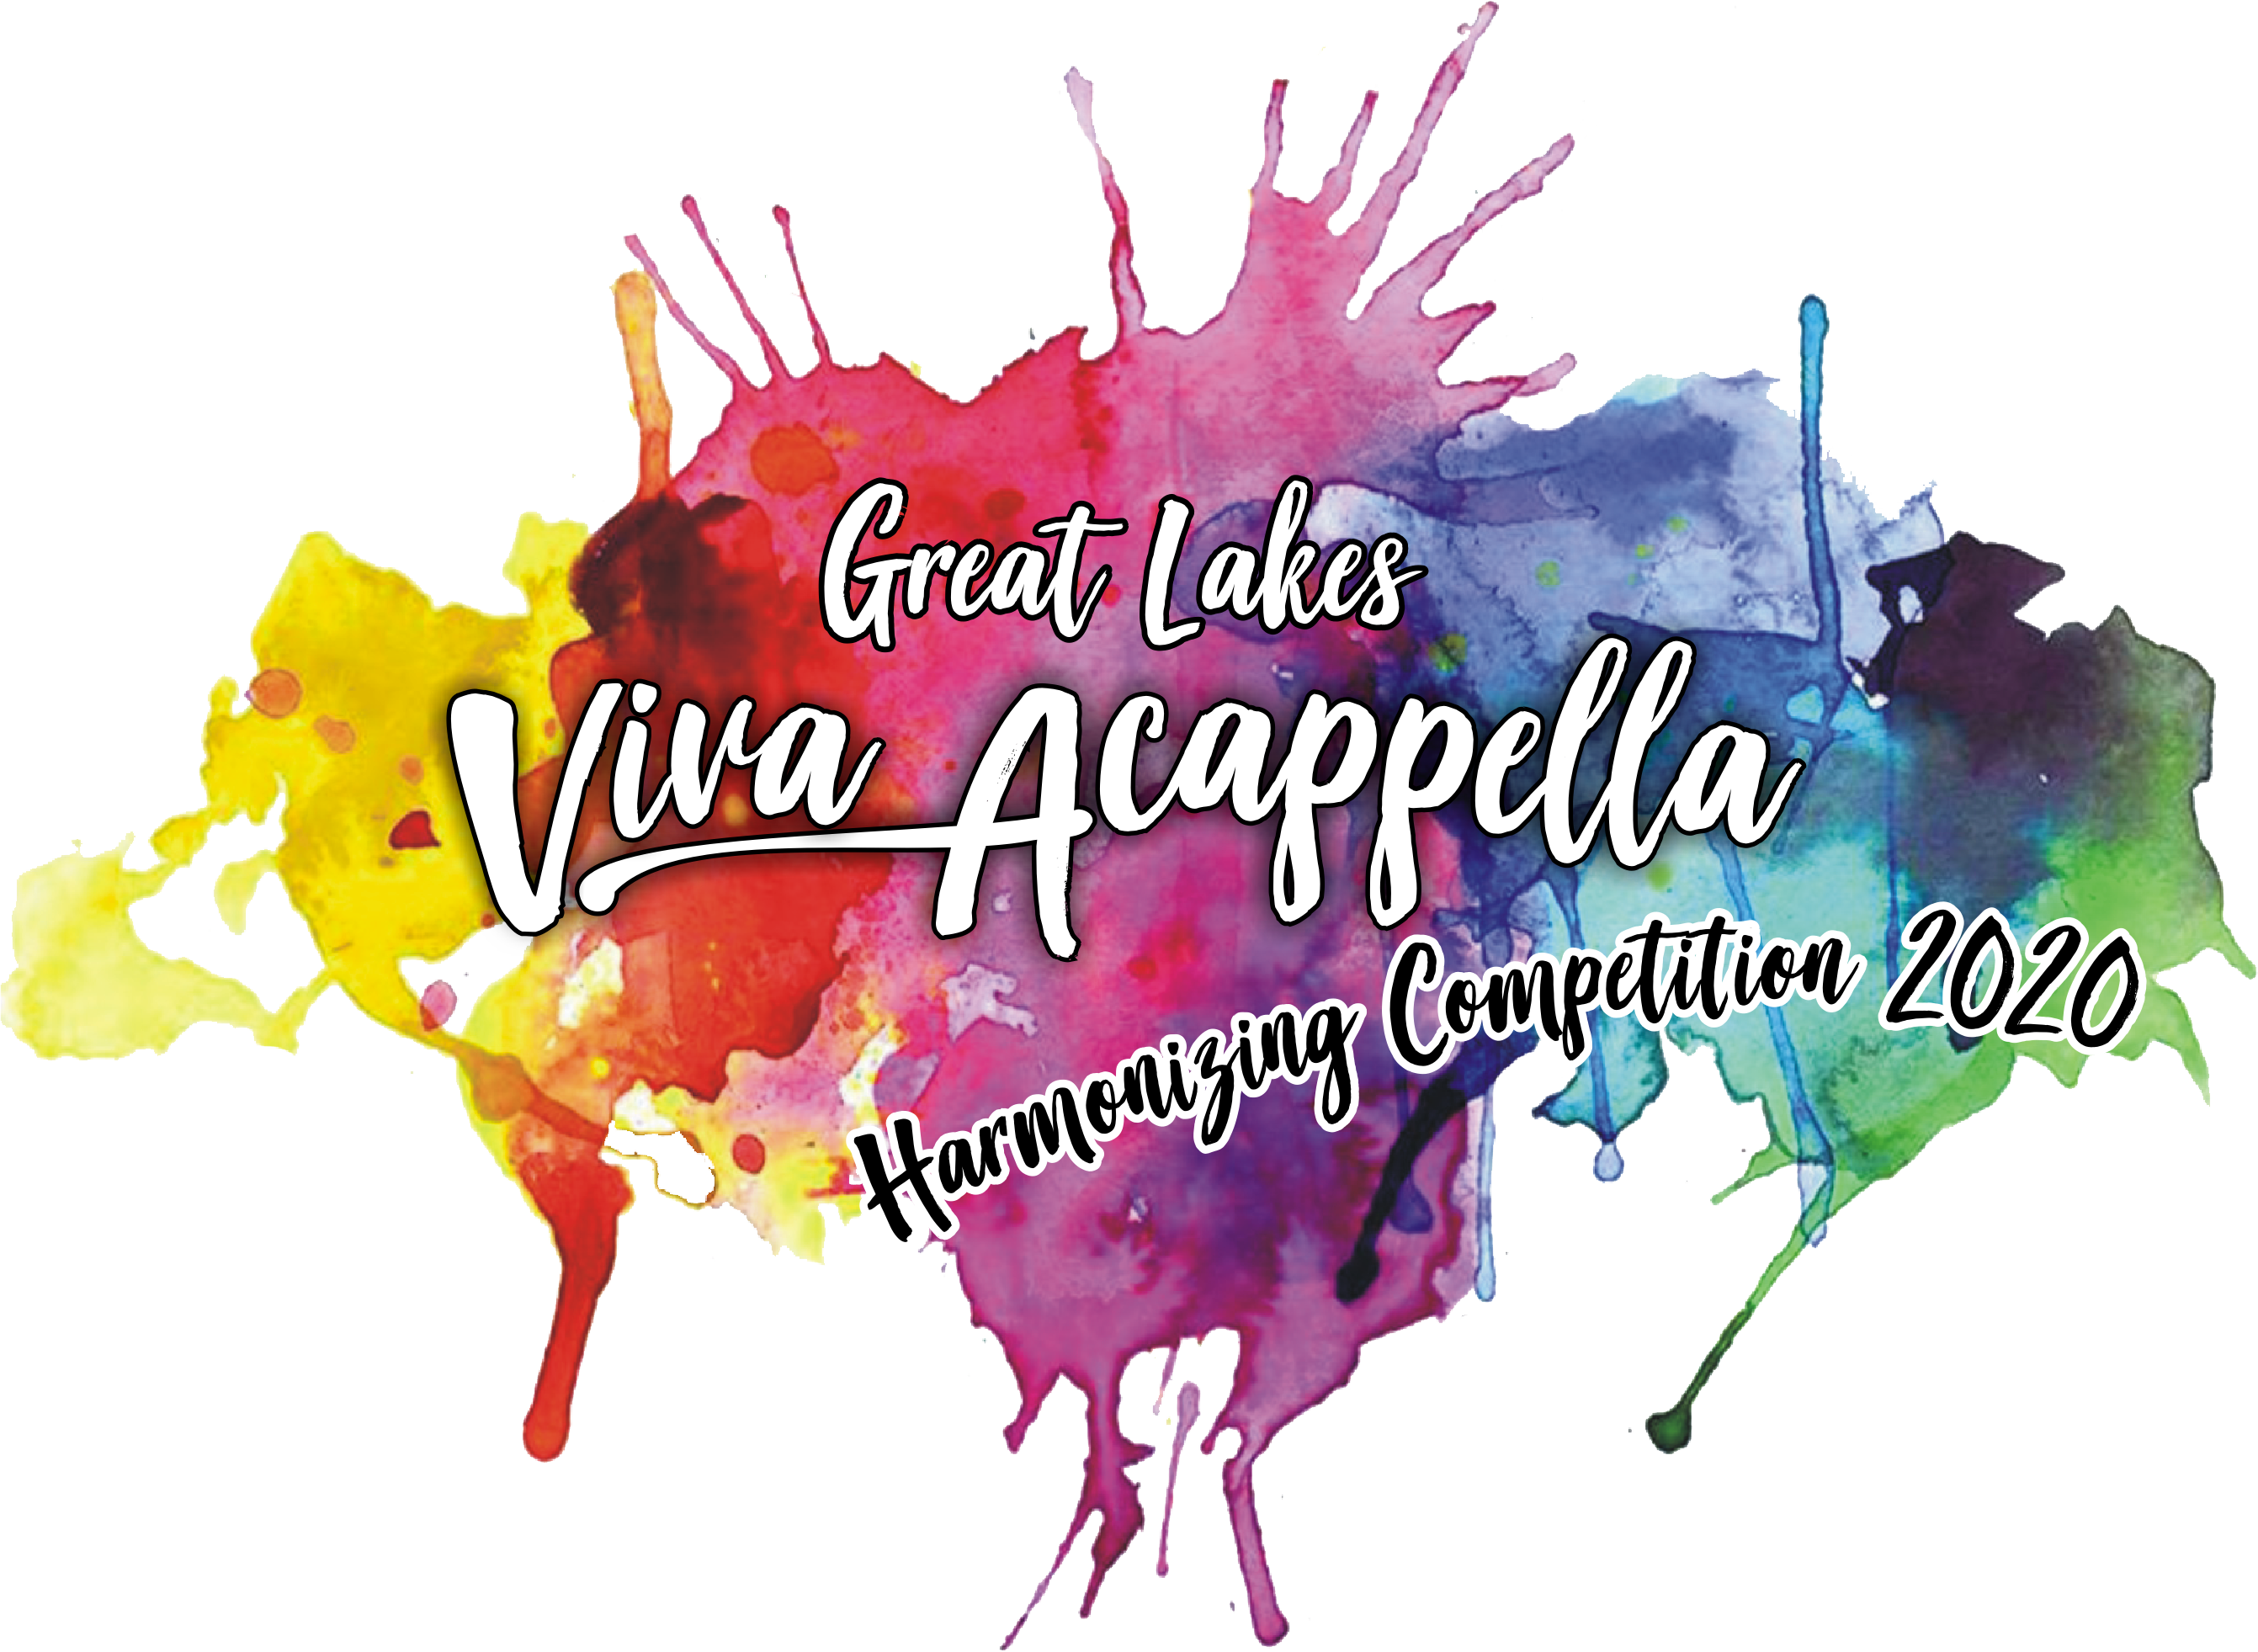 Great Lakes Harmony Viva Acappella Harmonizing Competition 2020 logo